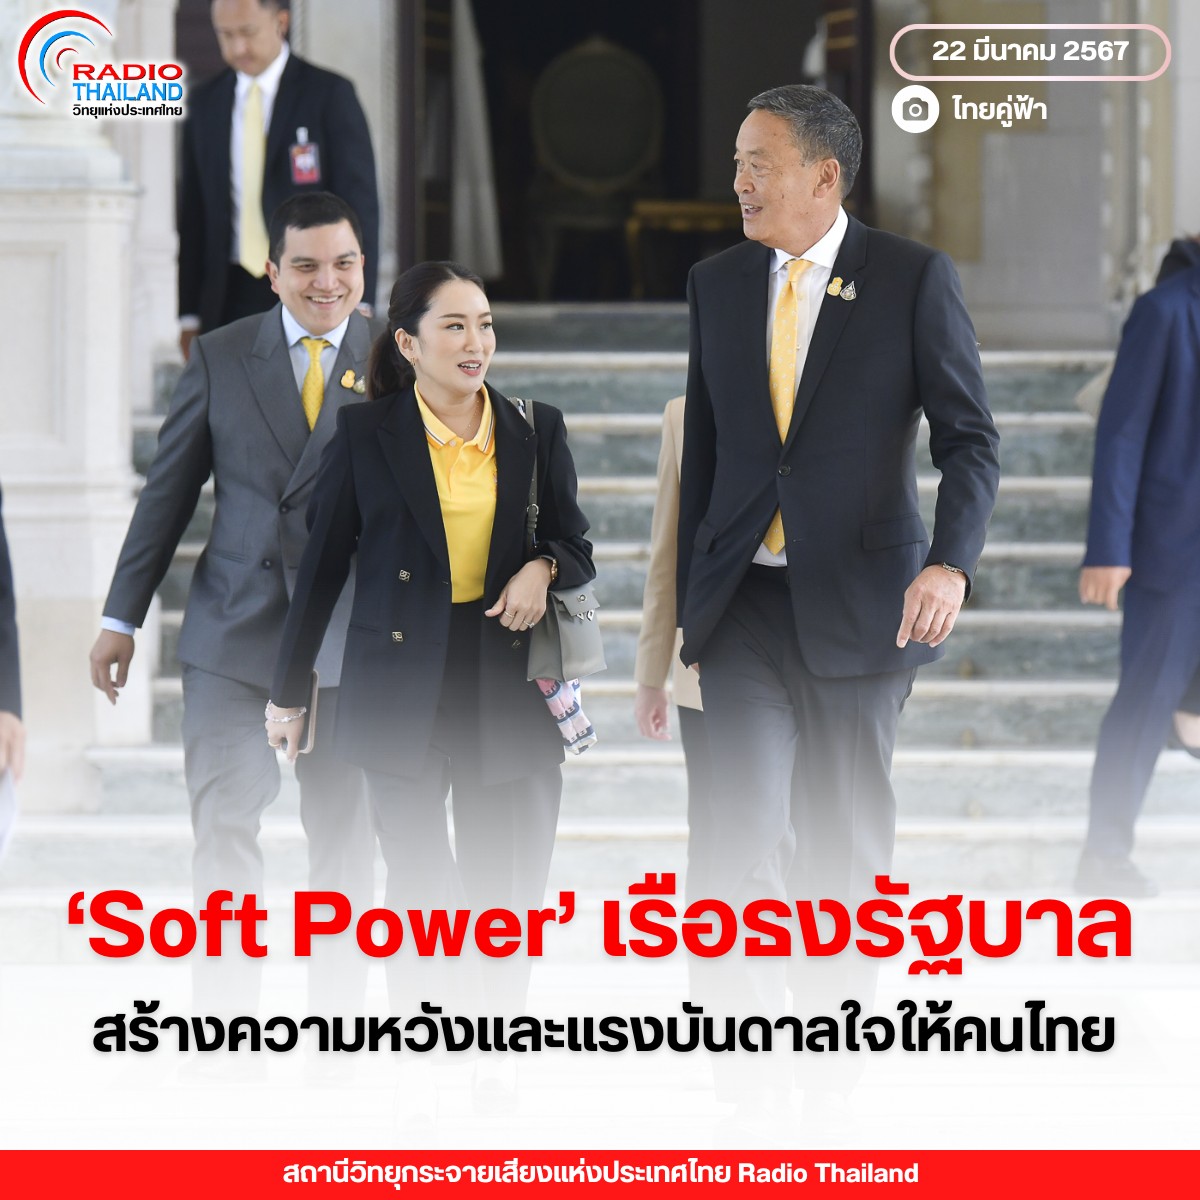 "Soft Power" เรือธงของรัฐบาล สร้างความหวังและแรงบันดาลใจให้คนไทย